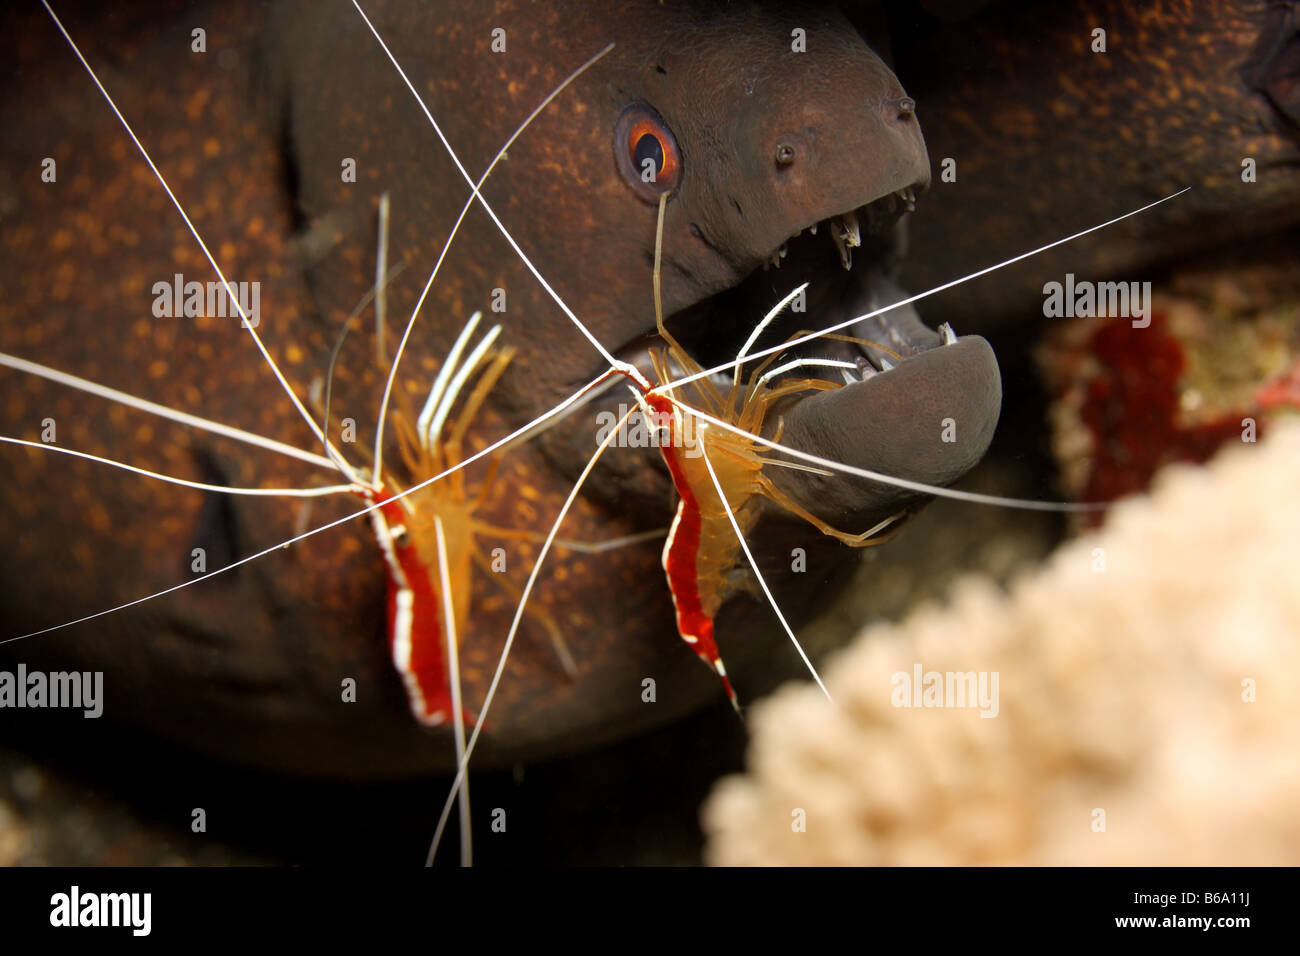 Morey Aal durch Reiniger Garnelen von Parasiten gereinigt Stockfoto